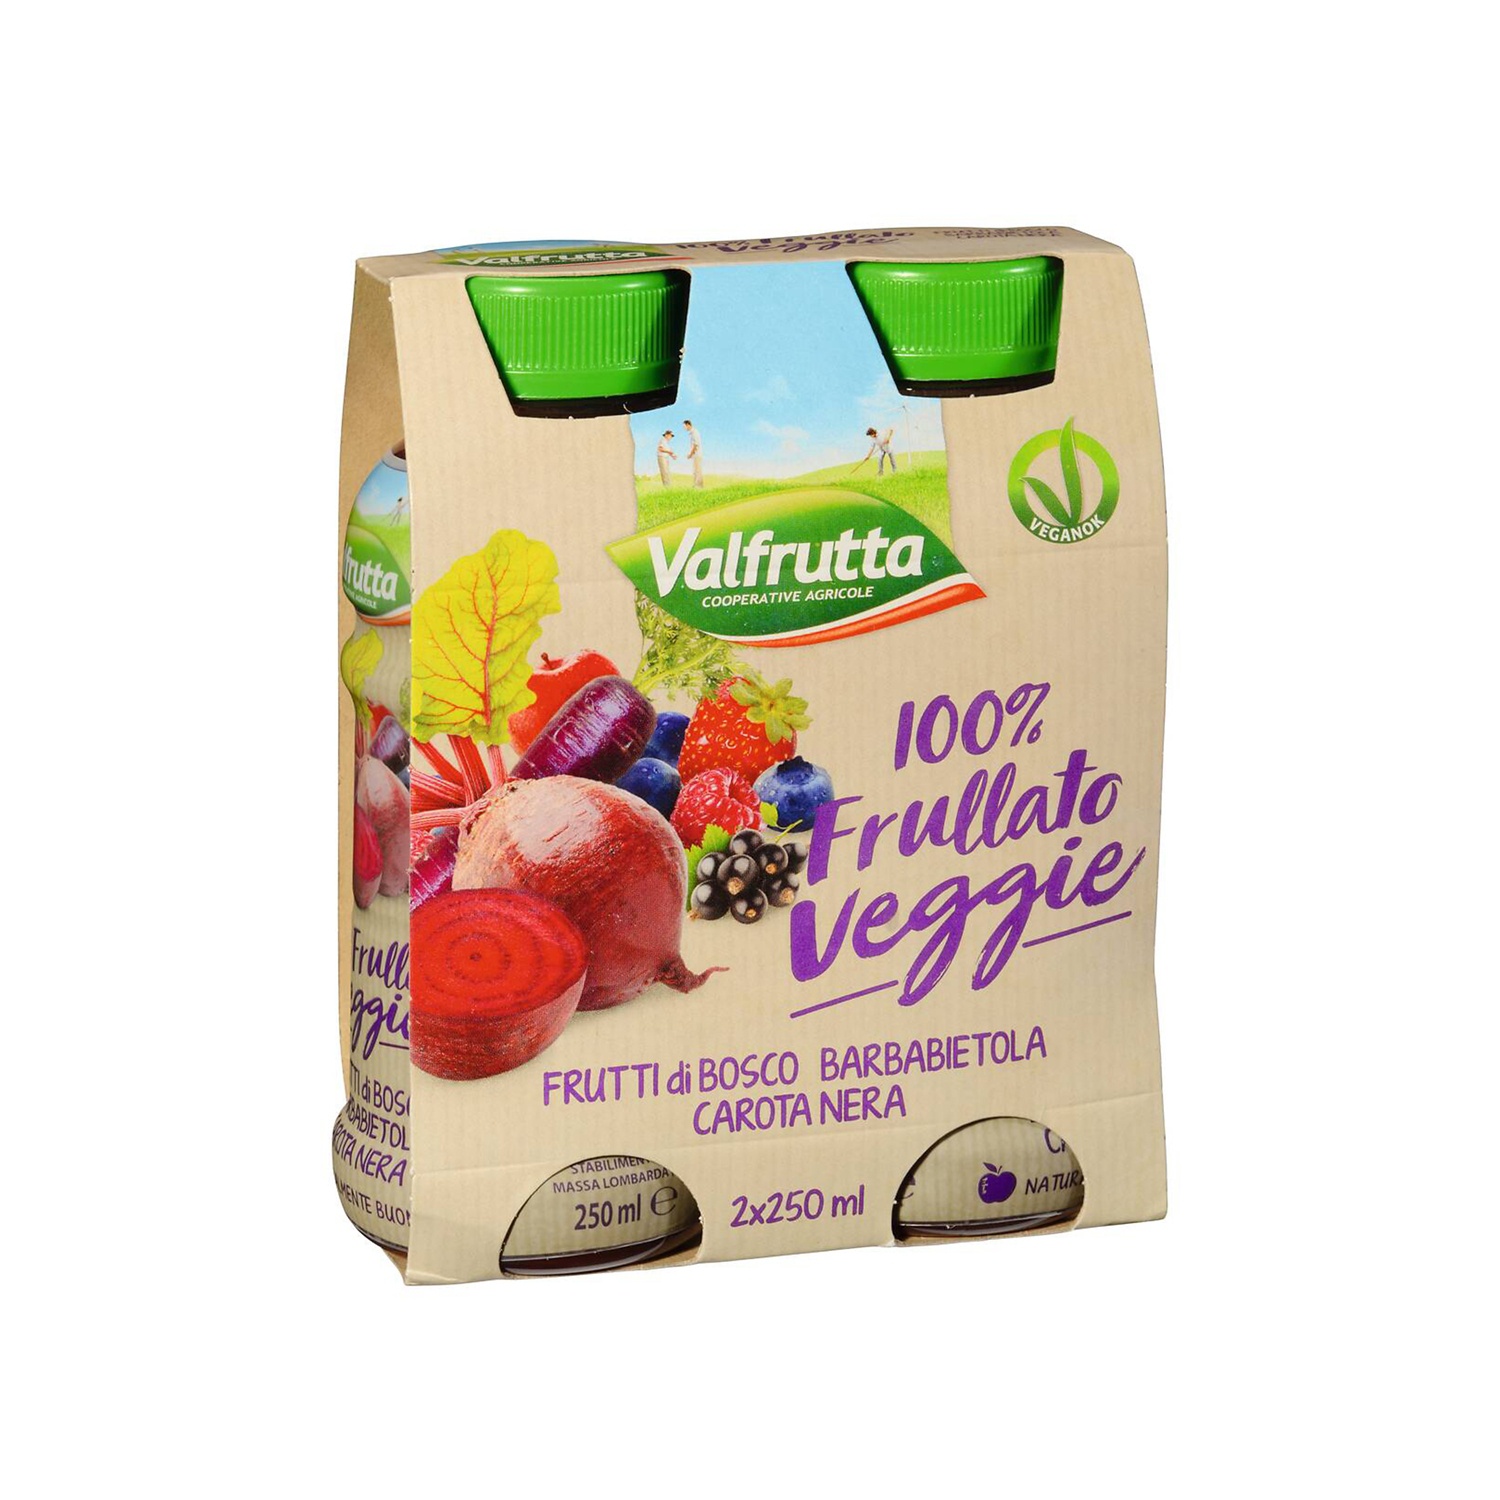 VALFRUTTA Frullato Veggie 100% ai frutti di bosco, barbabietola e carota nera